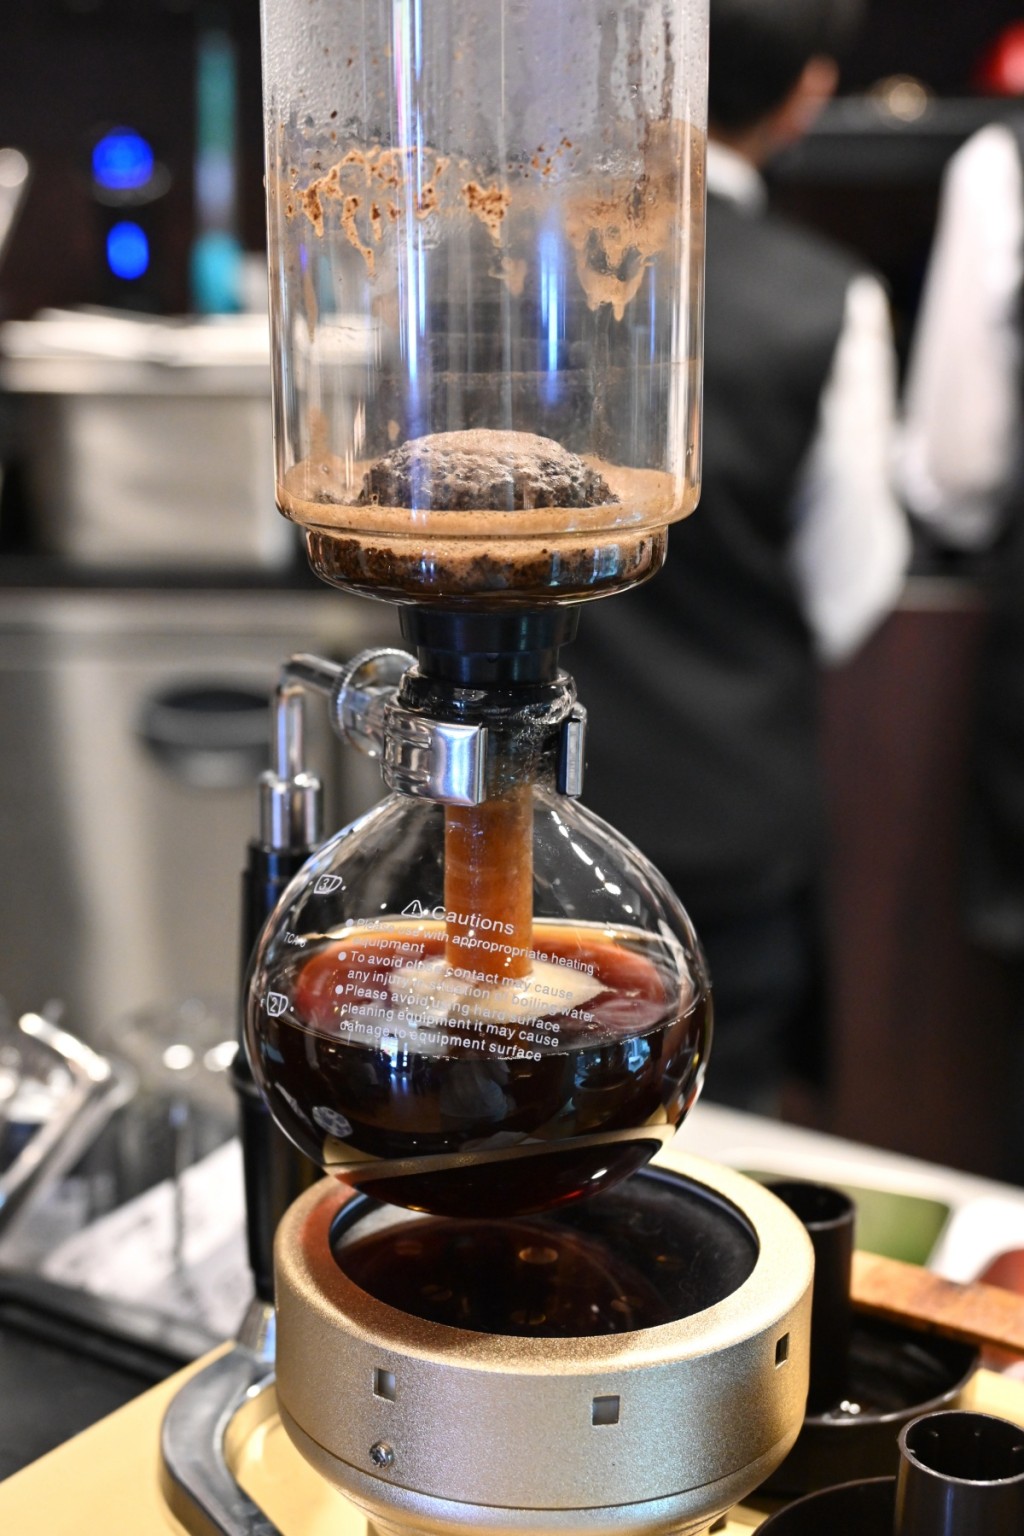 虹吸咖啡，招牌手沖虹吸咖啡，凸顯焙煎咖啡豆的最佳風味。客人可自選咖啡杯，喝起來分外甘醇美味。